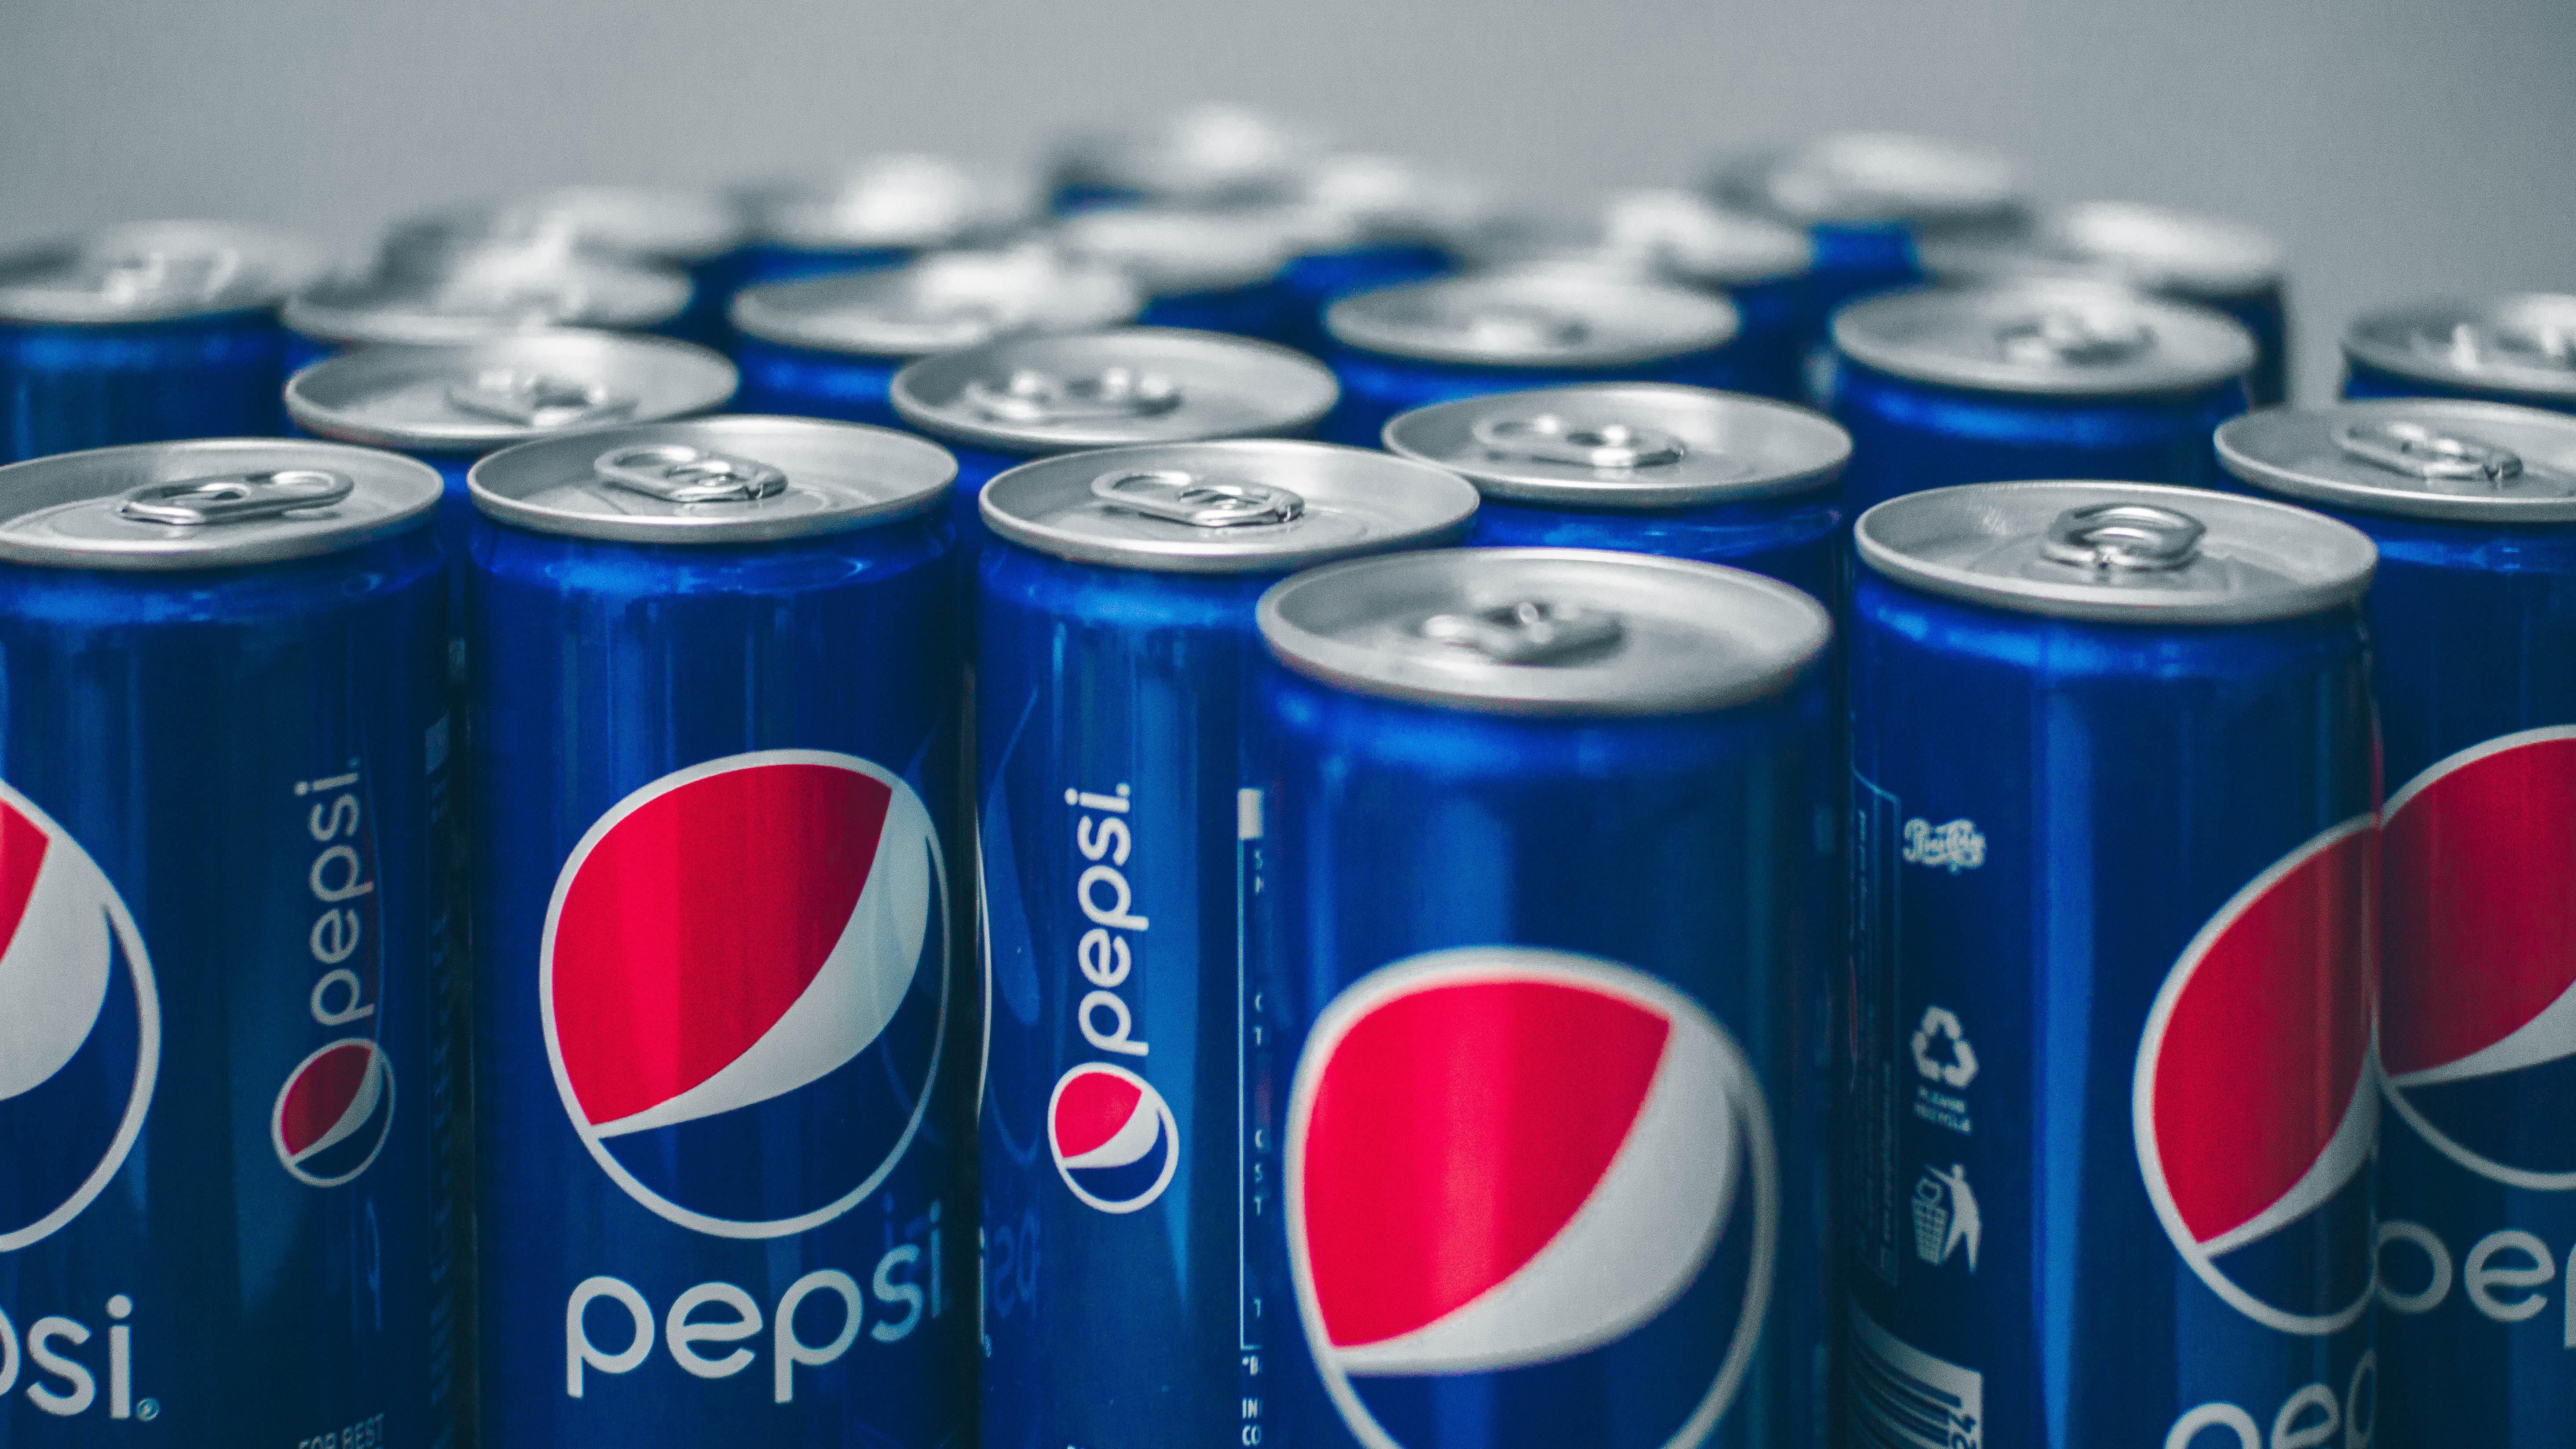 Kék színű Pepsi üdítős dobozok sorakoznak a Pepsi logójával